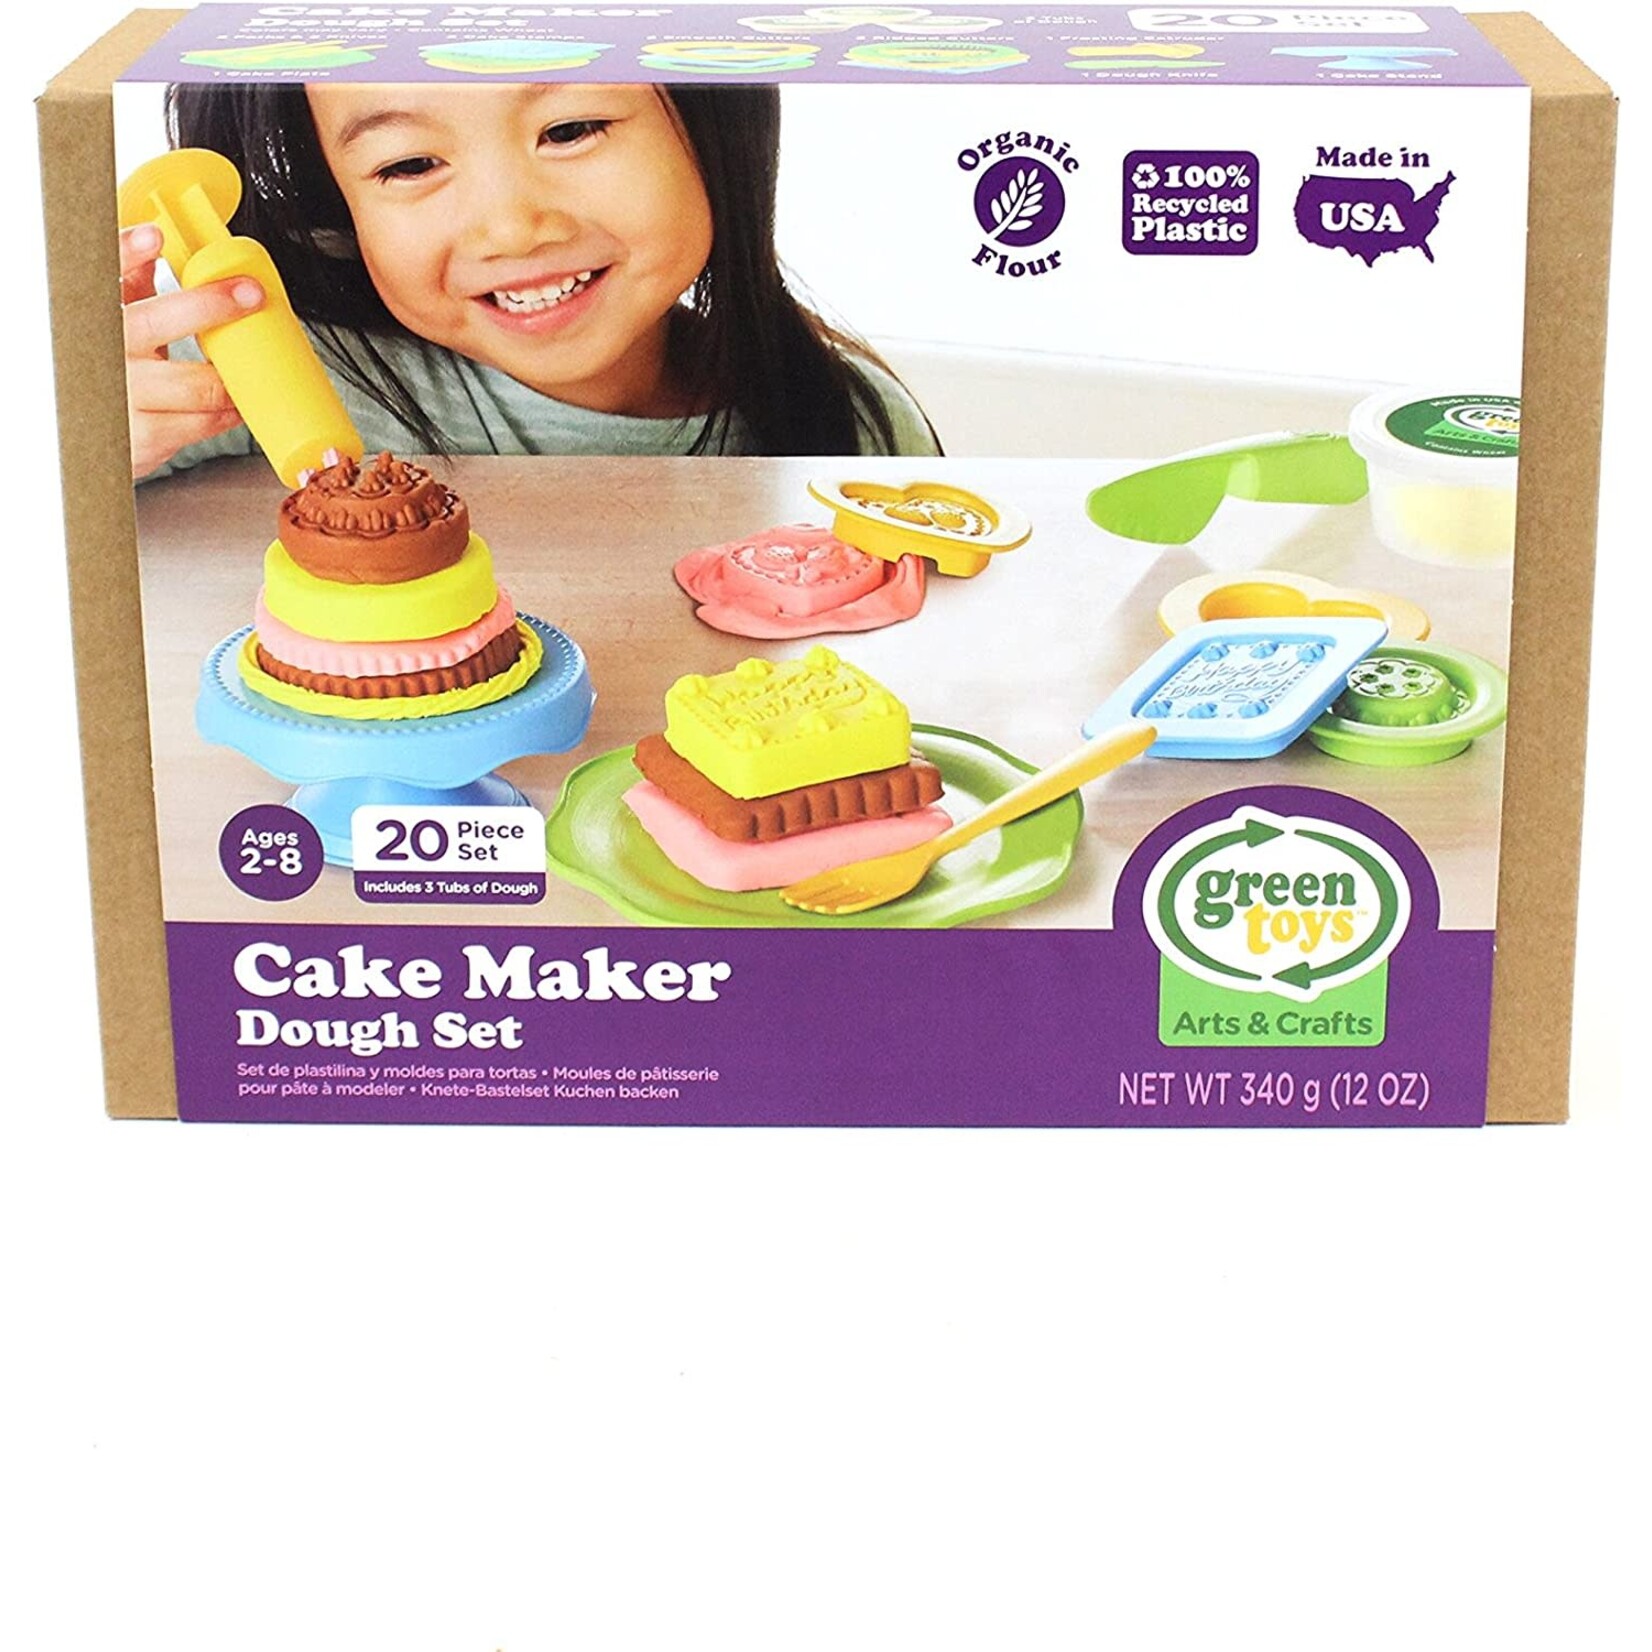 Cake Maker Dough Set